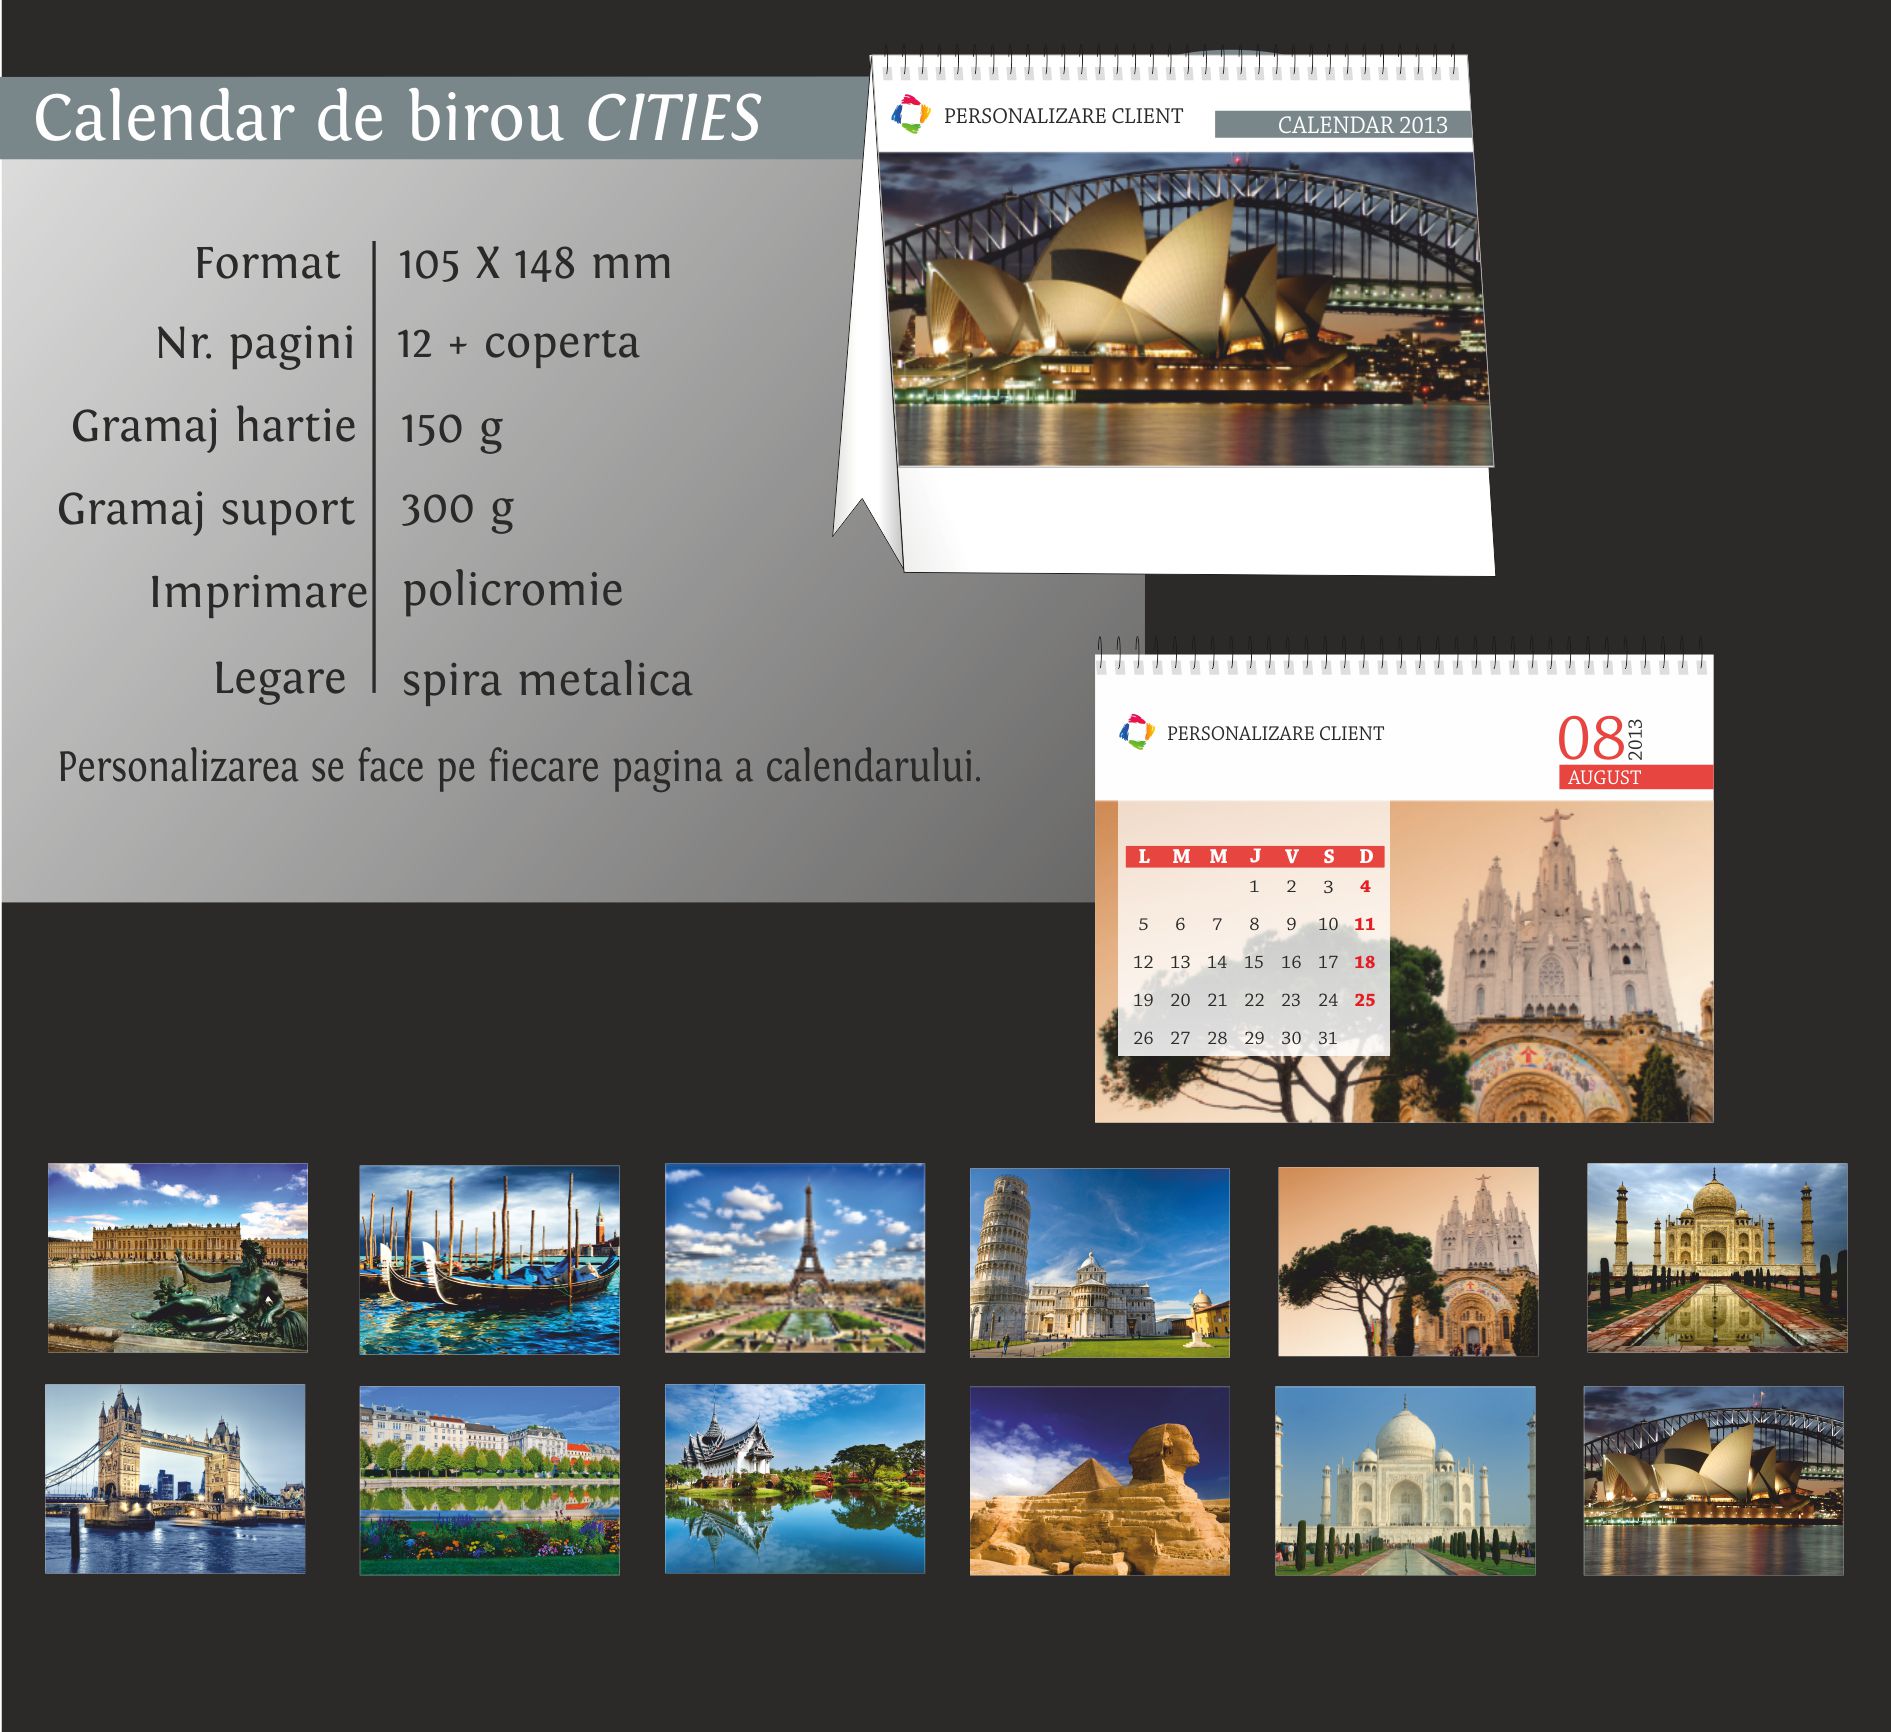 calendare birou cities